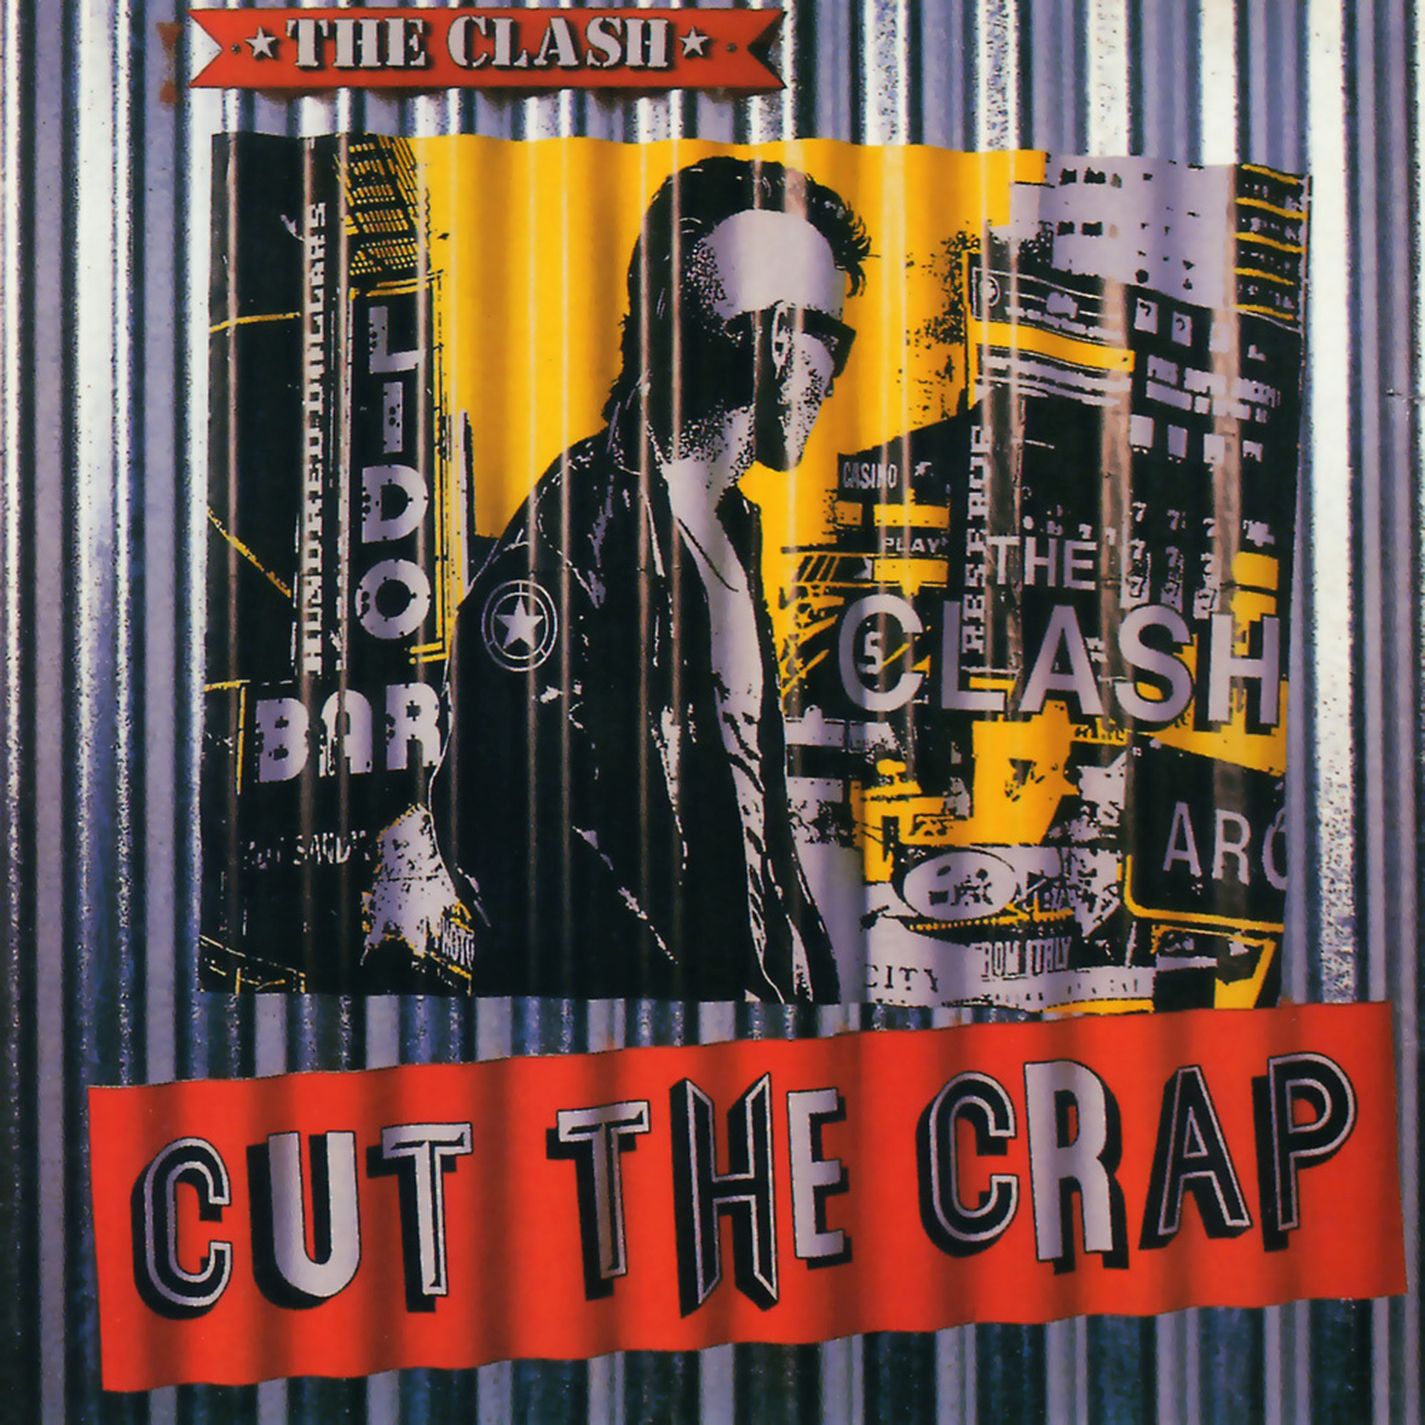 俺の好きなアルバムたち ある意味 パンク精神に則ったラスト アルバム Clash Cut The Crap